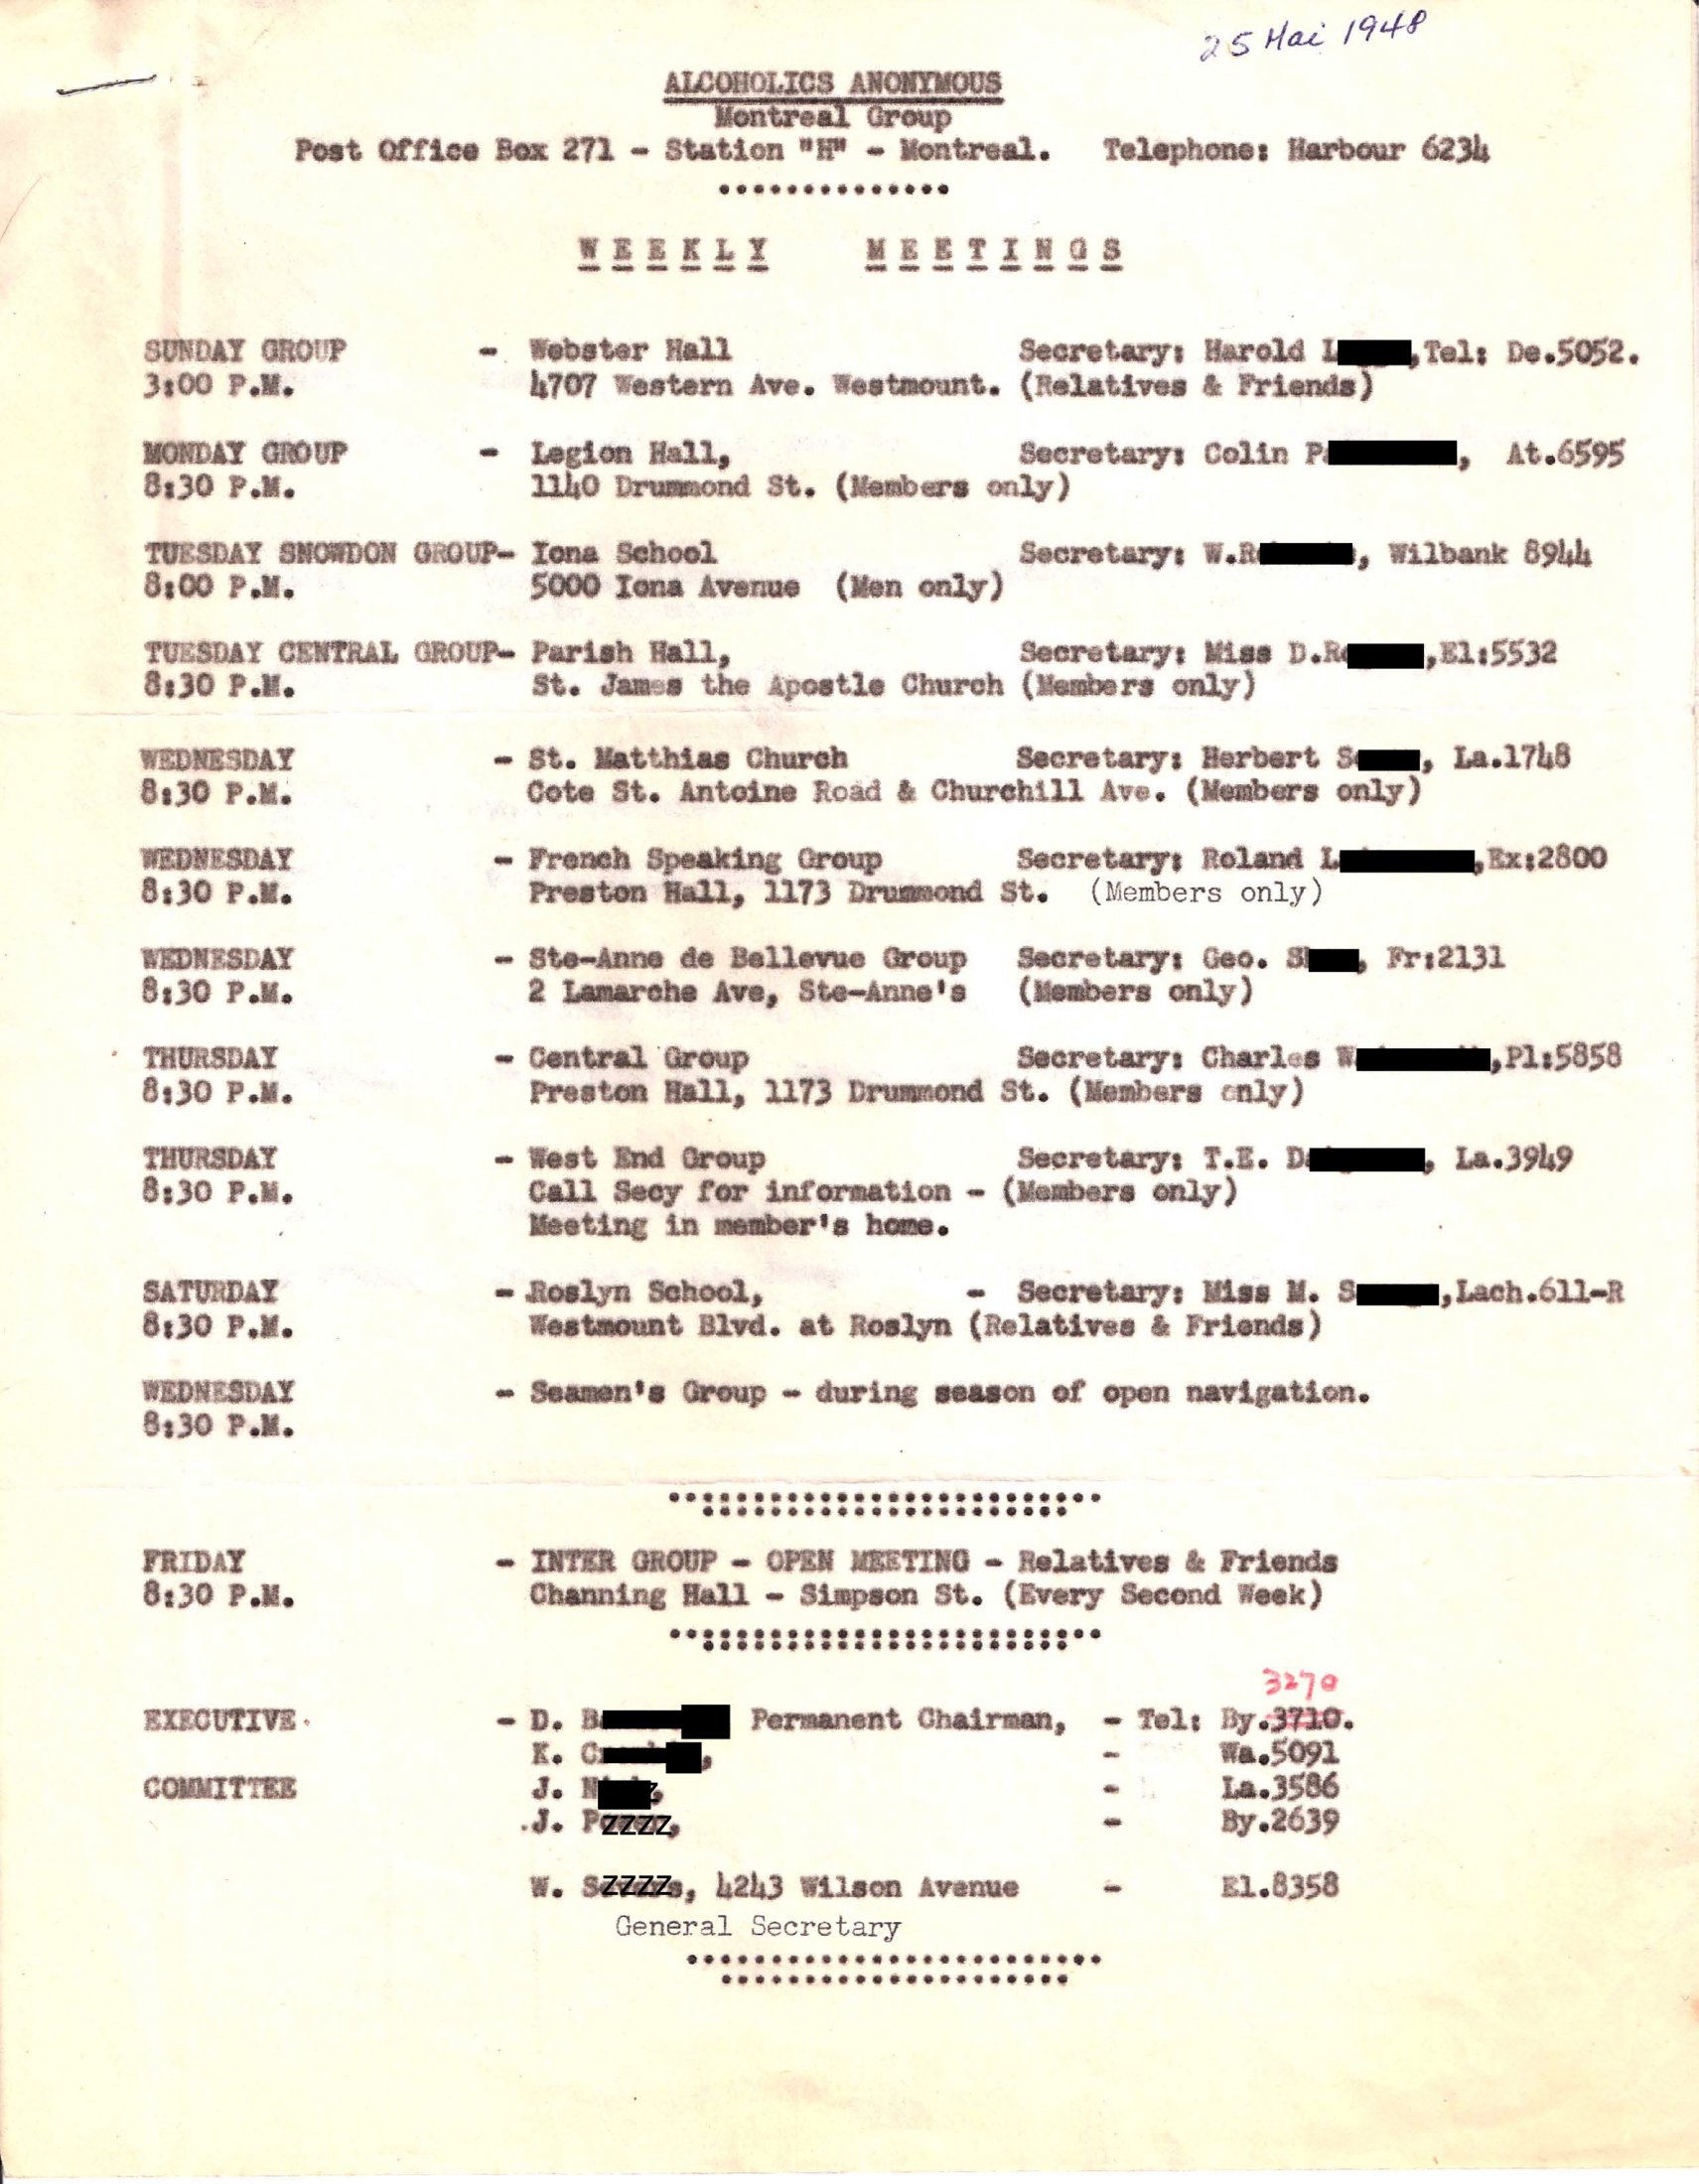 Weekly meetings in 1948